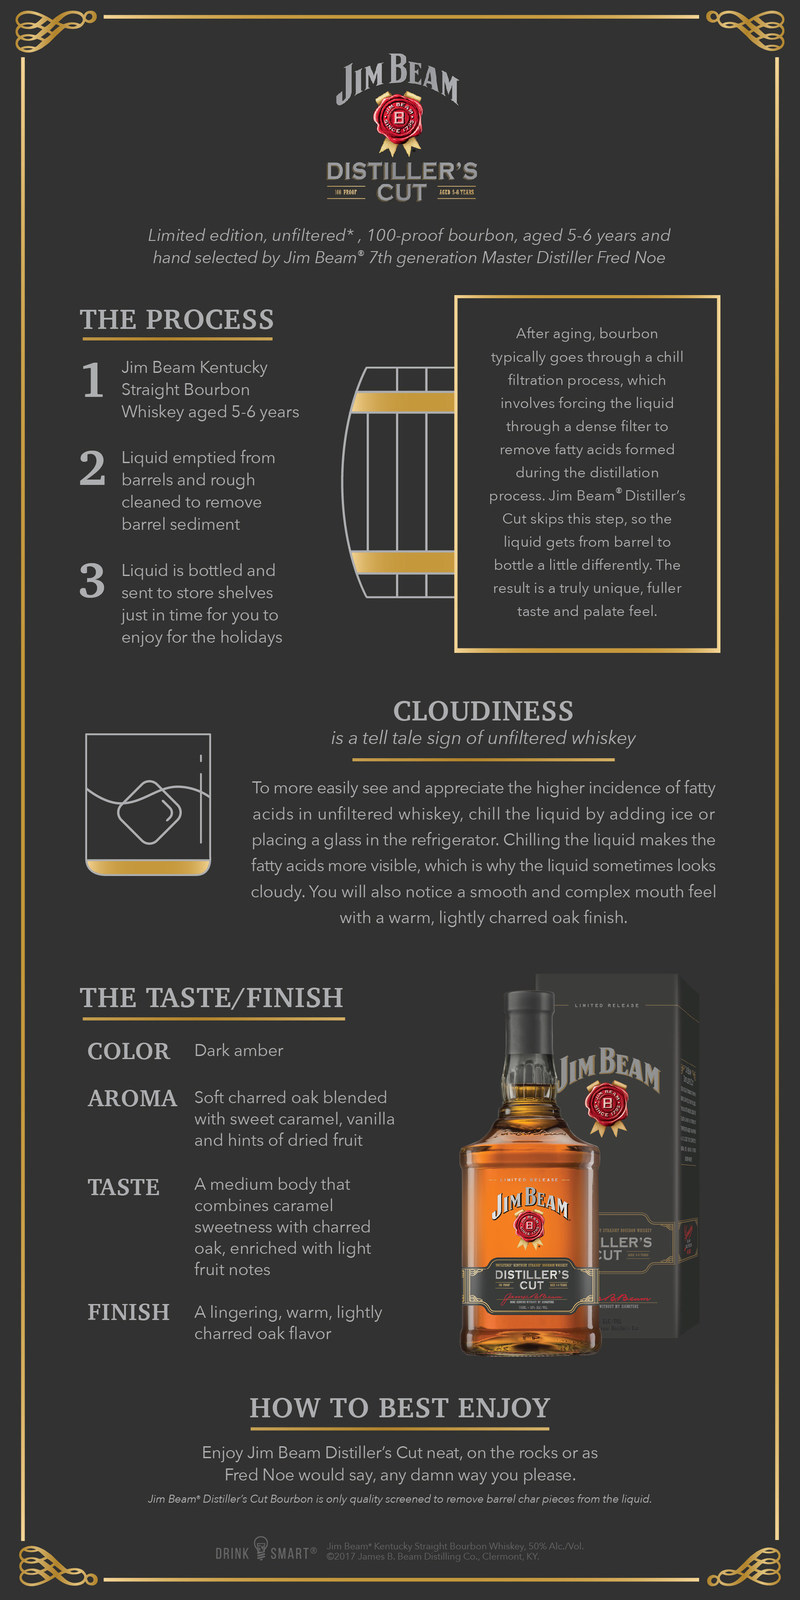 Jim Beam® new unfiltered bourbon, Jim Beam® Distiller's Cut.